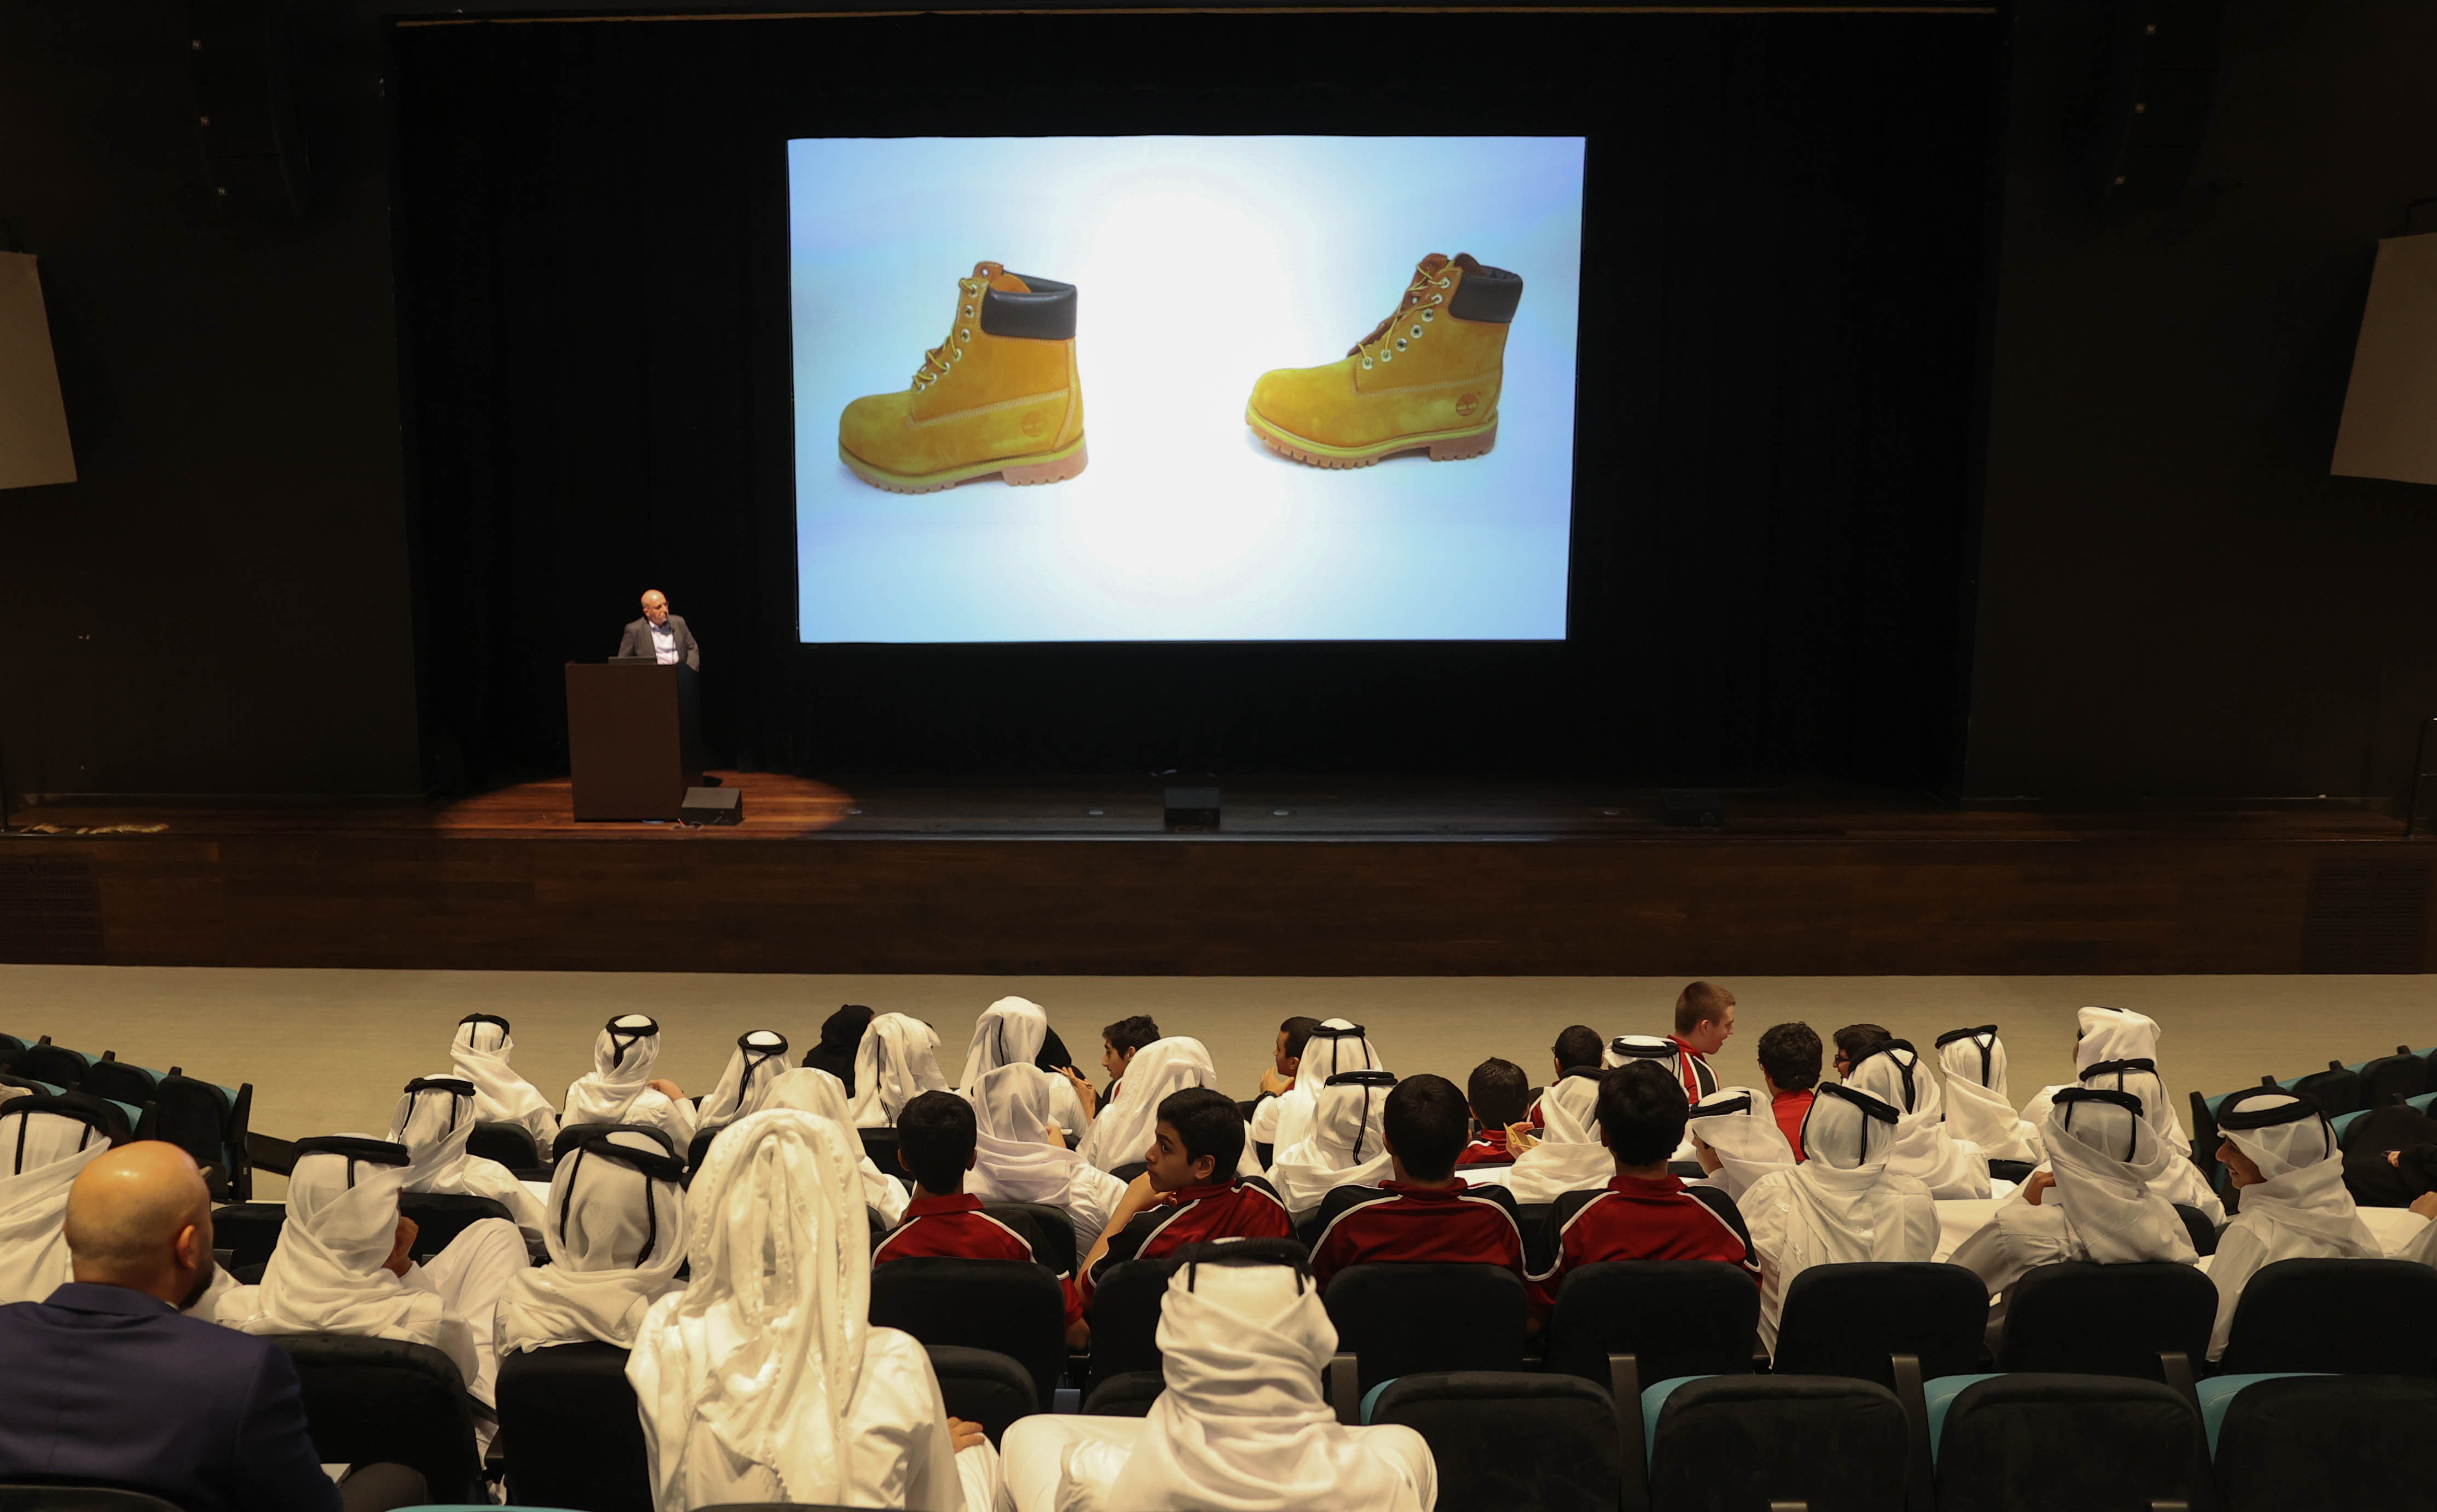 وزارة التجارة والصناعة تنظم بالتعاون مع مؤسسة قطر ورشة عمل حول حقوق الملكية الفكرية لطلاب أكاديمية قطر- الدوحة